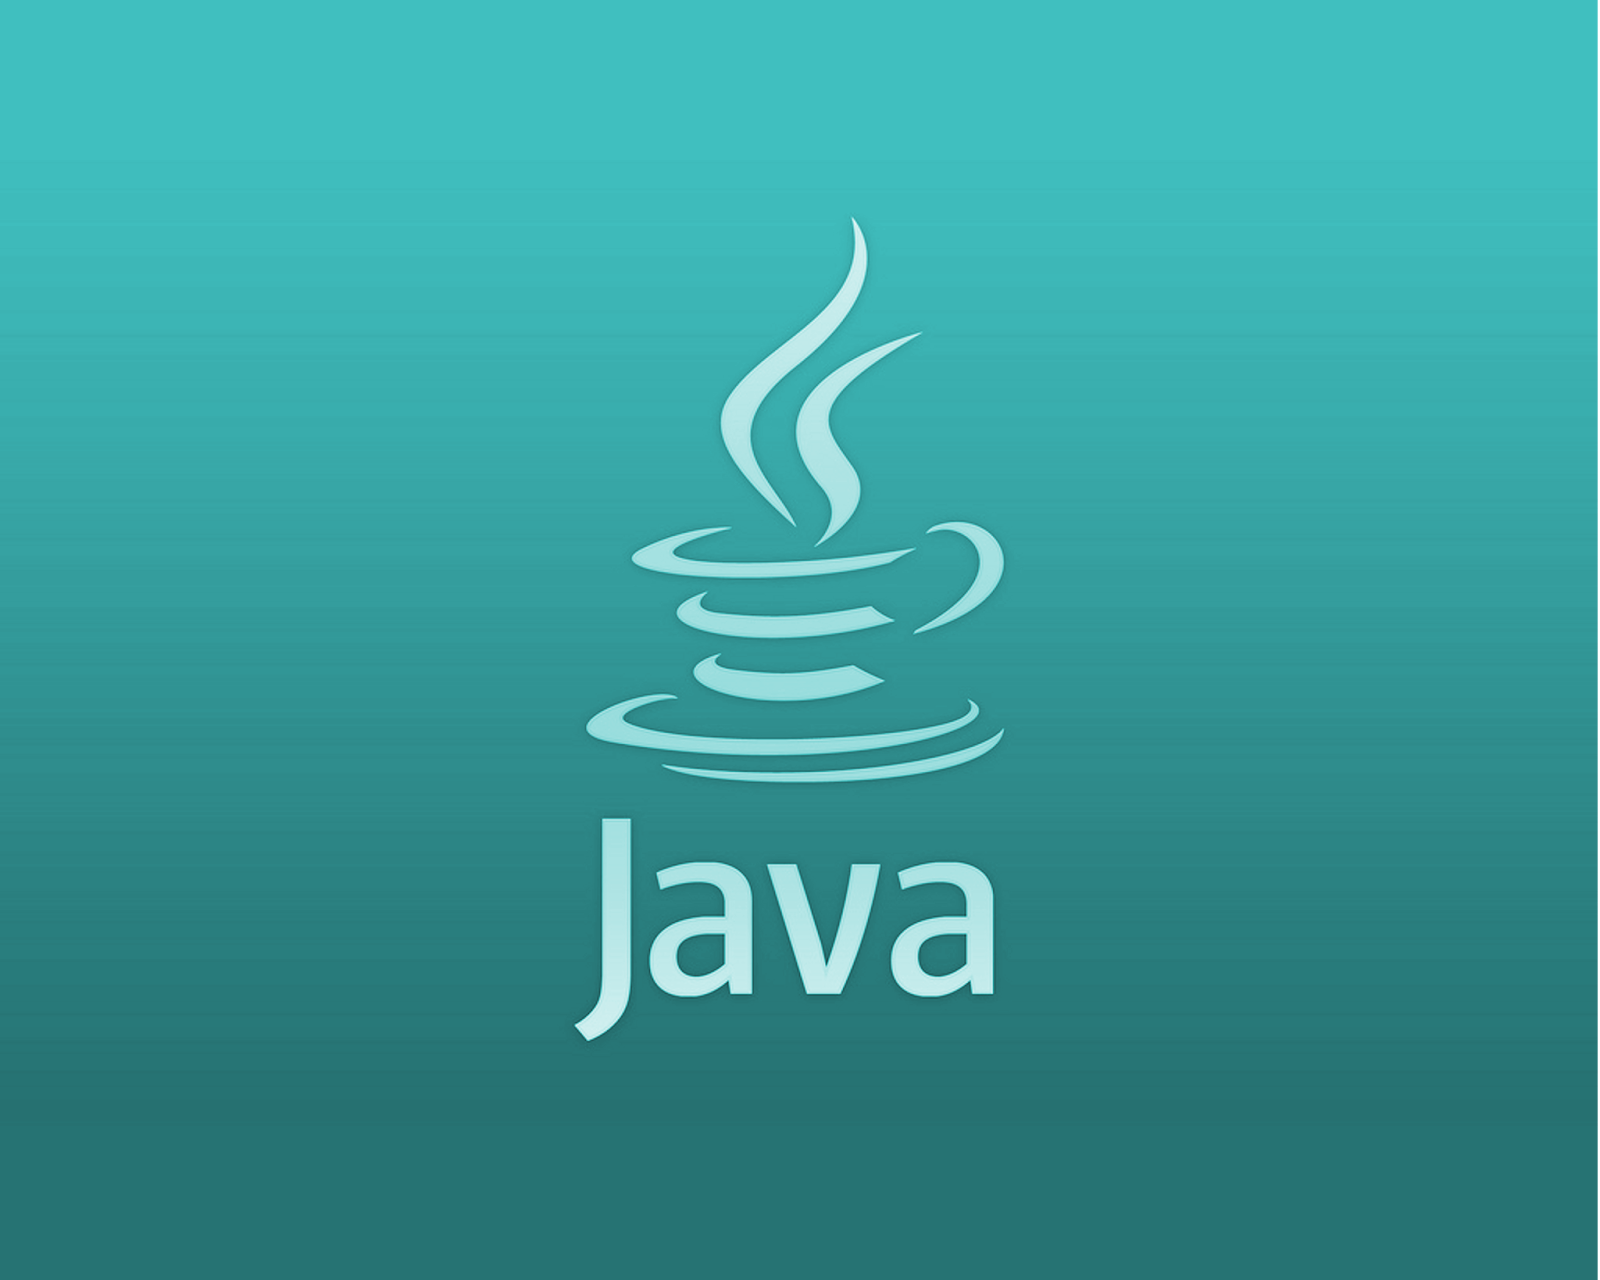 Язык программирования java. Java язык программирования логотип. Жавалоготип язык программирования. Иконка java. Java javac